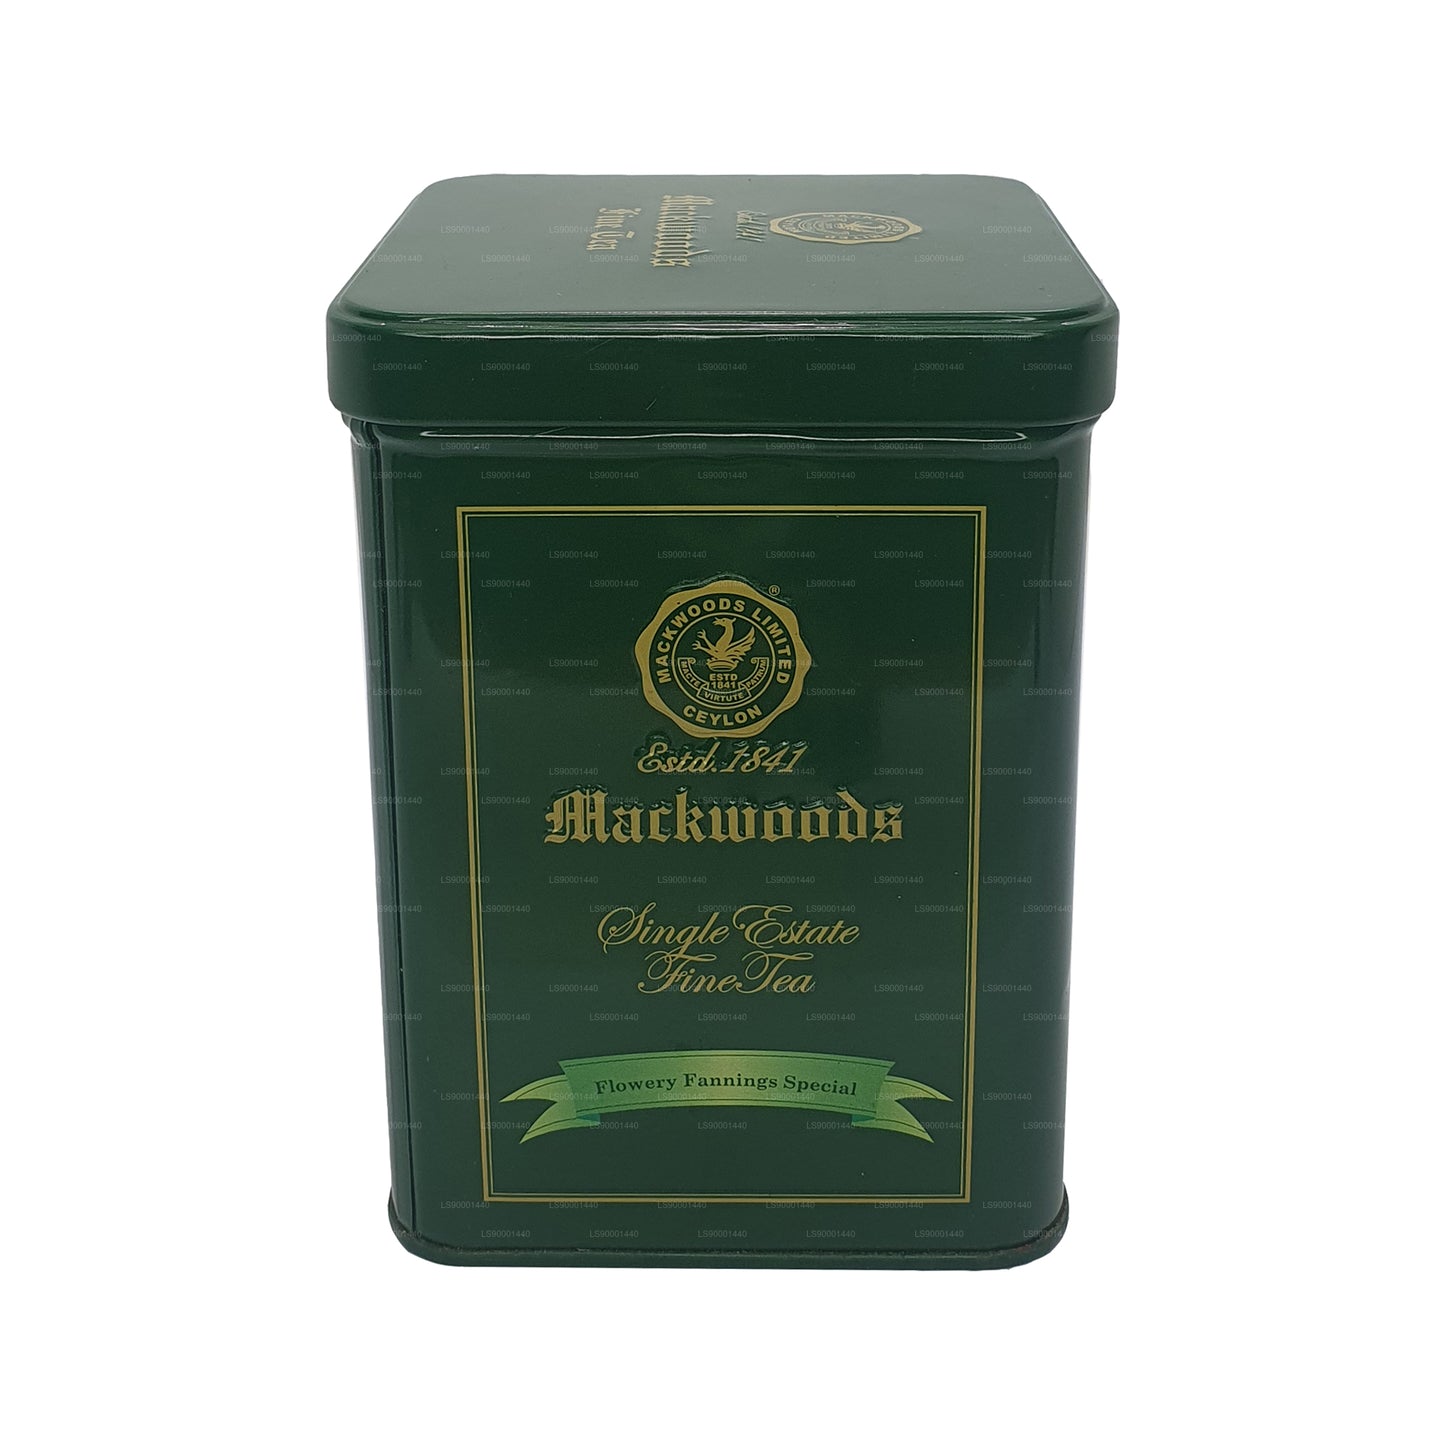 Speciální čaj Mackwoods Single Estate Fannery Fannings (FFsp) (100 g)